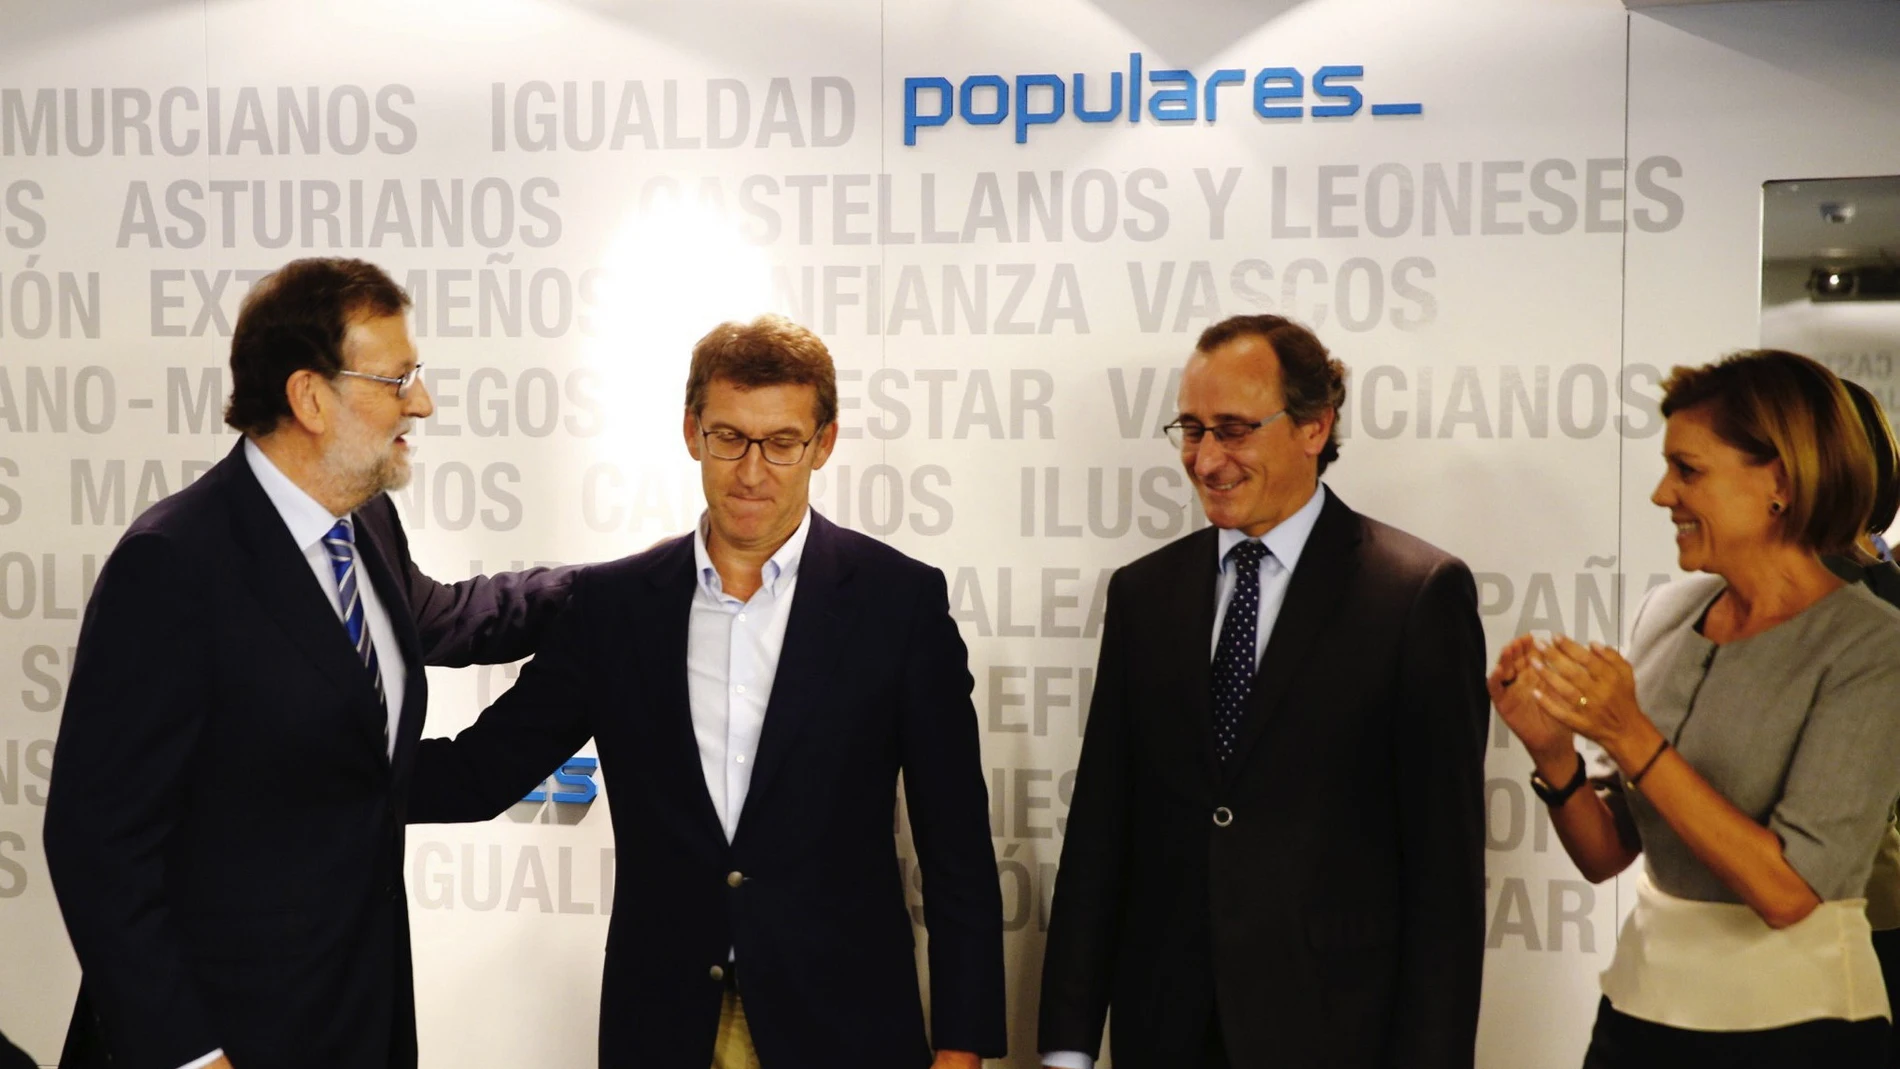 El líder del PP, Mariano Rajoy (i) saluda al presidente de la Xunta, Alberto Núñez Feijoó (2i), ante el presidente del PP vasco, Alfonso Alonso (2d), y la secretaria general del PP, María Dolores de Cospedal